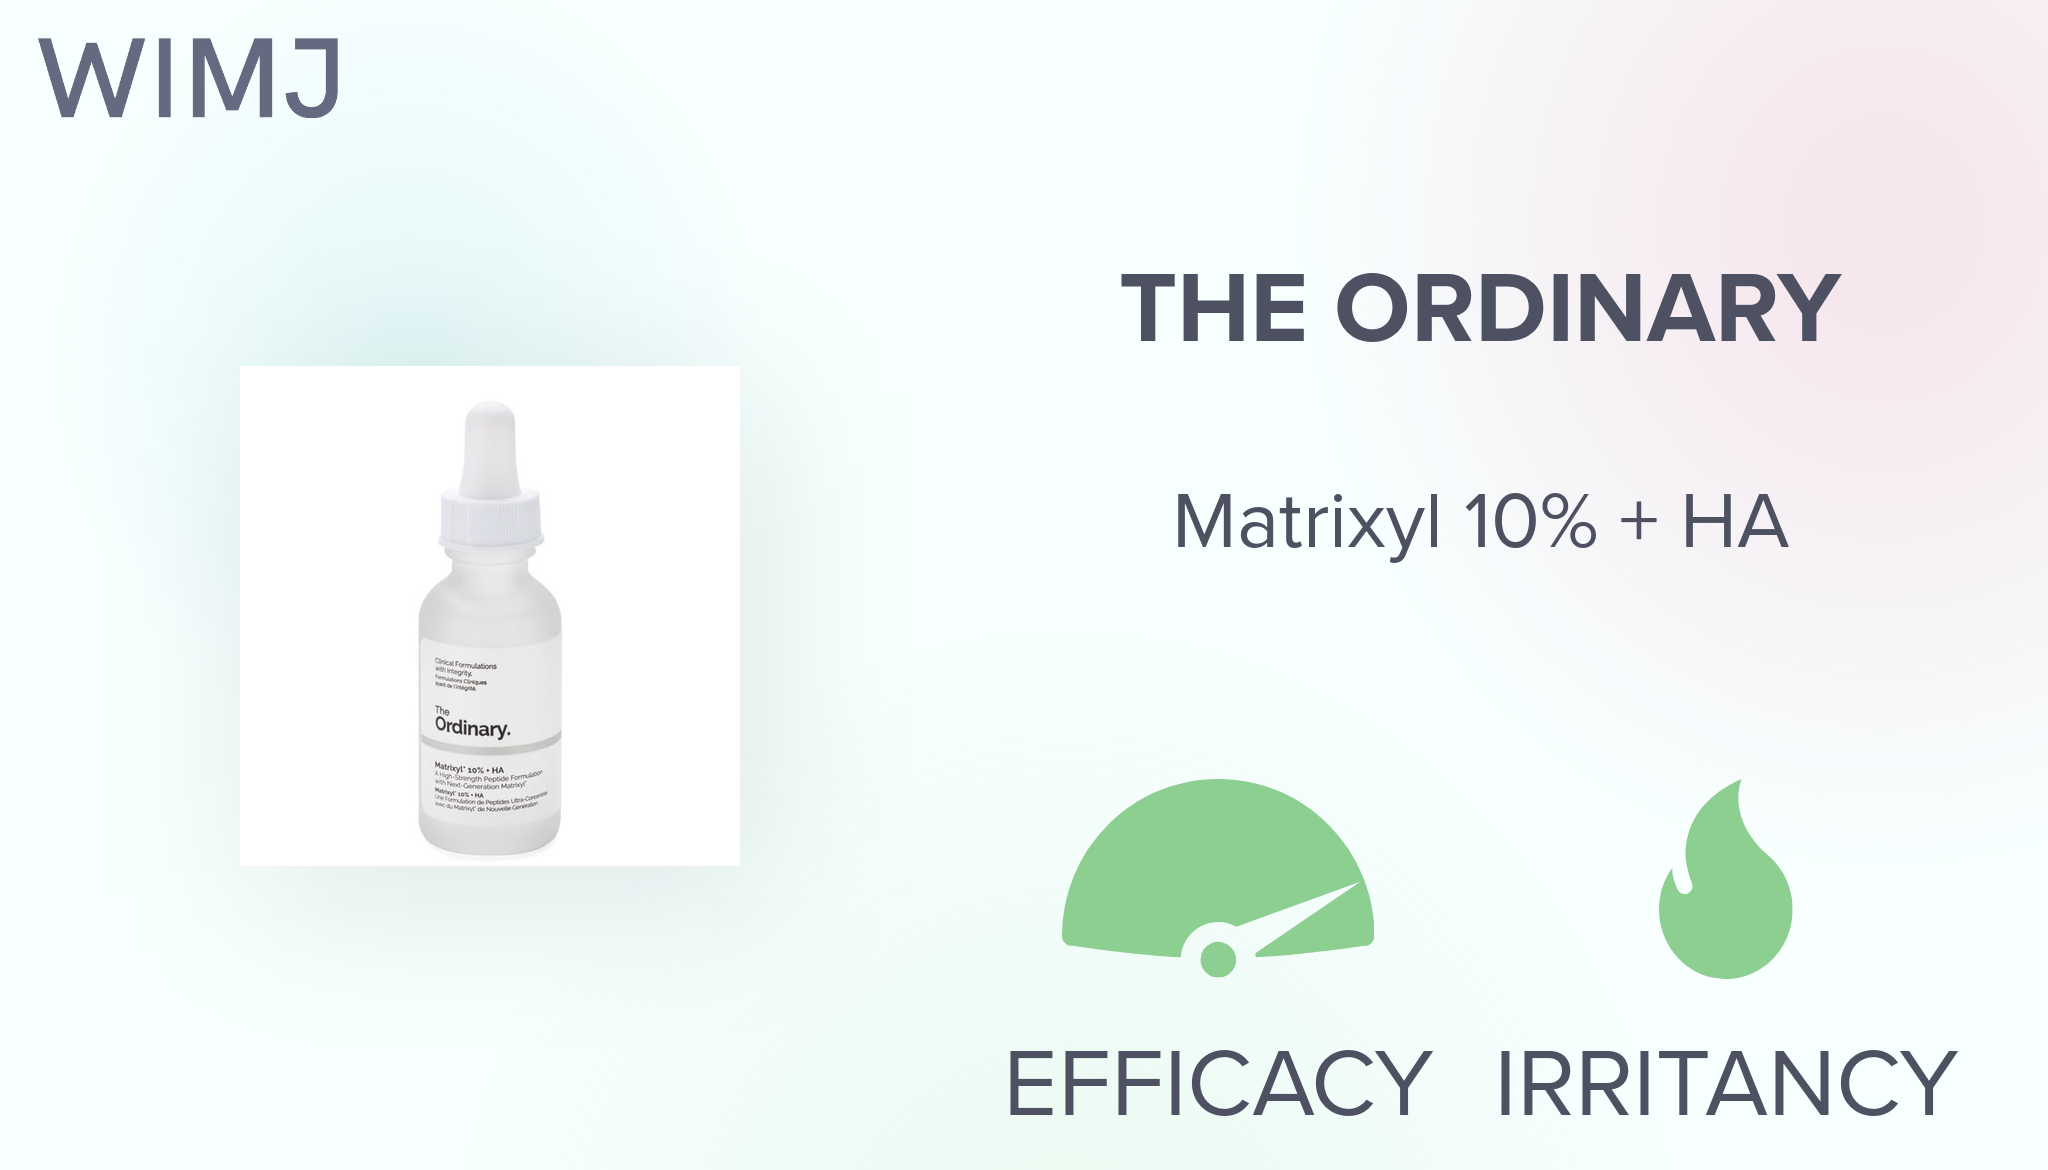 Matrixyl 10% + HA